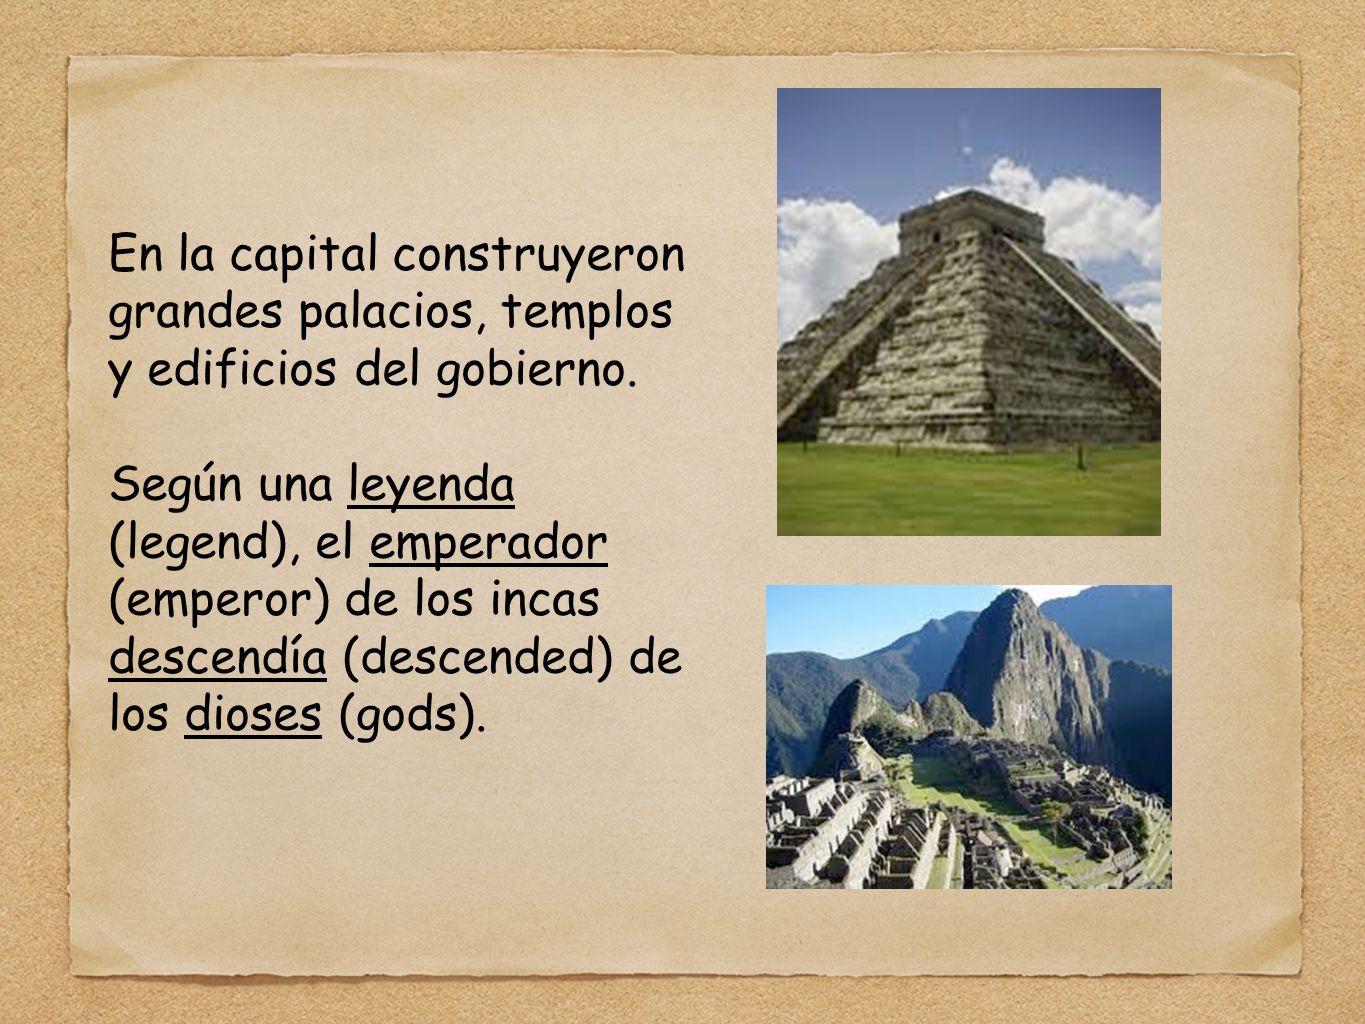 En la capital construyeron grandes palacios, templos y edificios del gobierno.